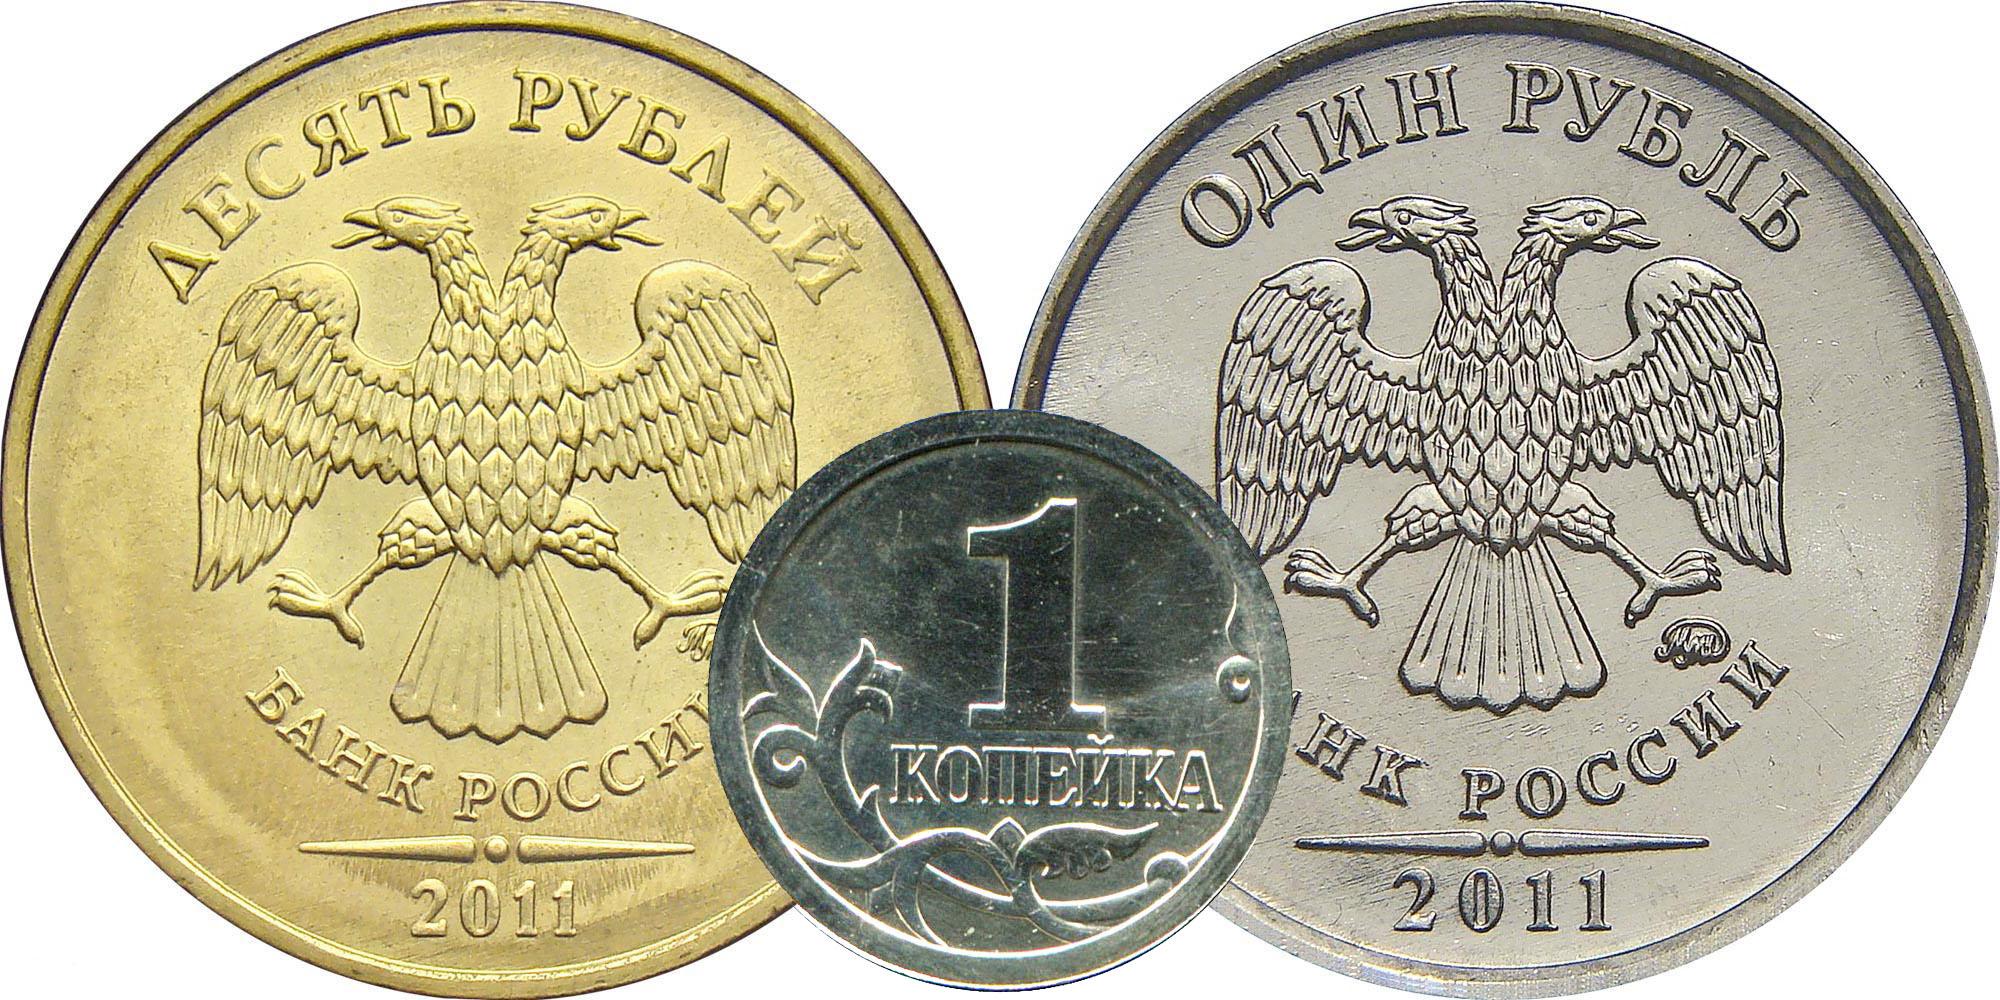 Цены на монеты 2011 года